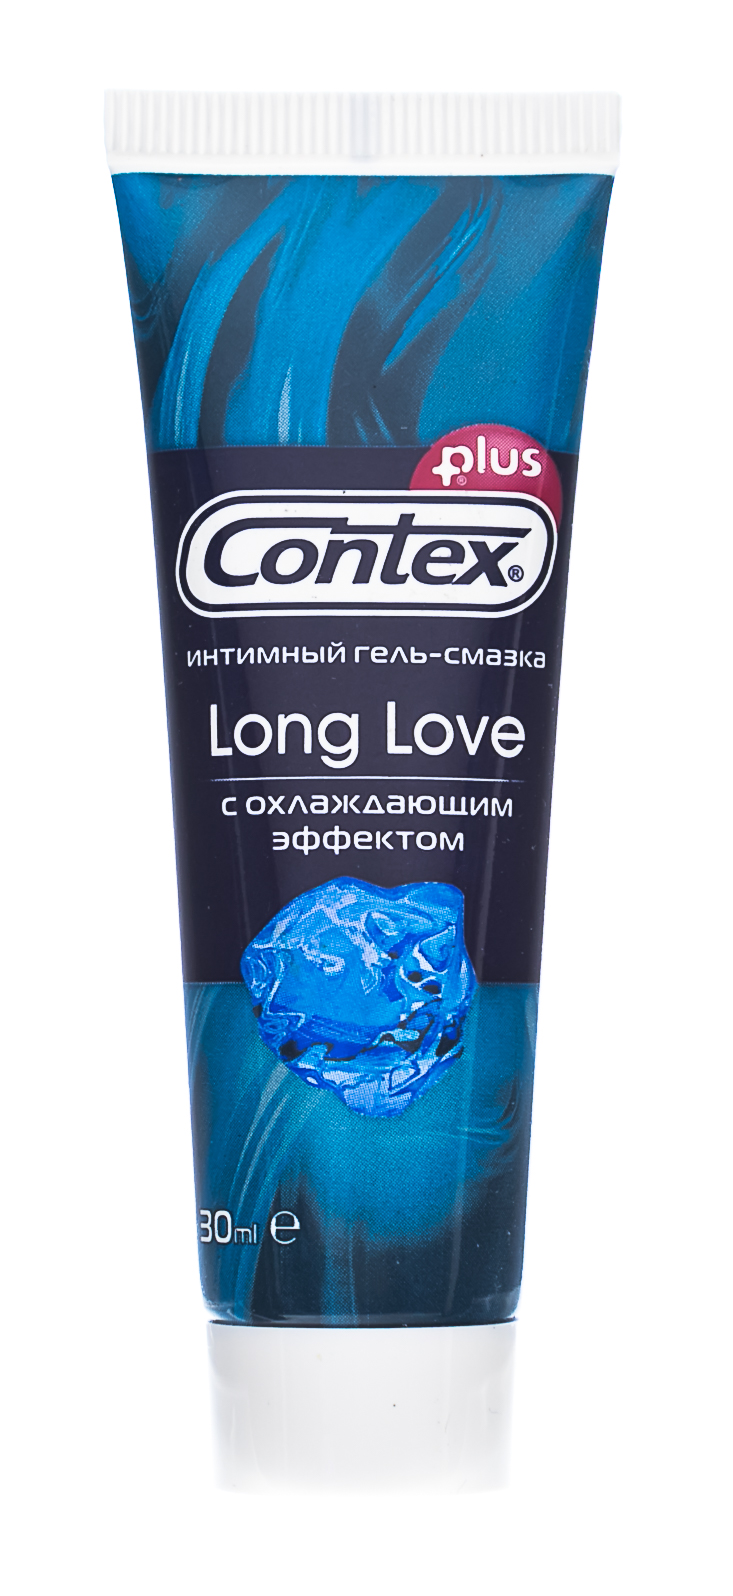 Contex Гель-смазка Long Love продлевающий акт 30 мл (Contex,